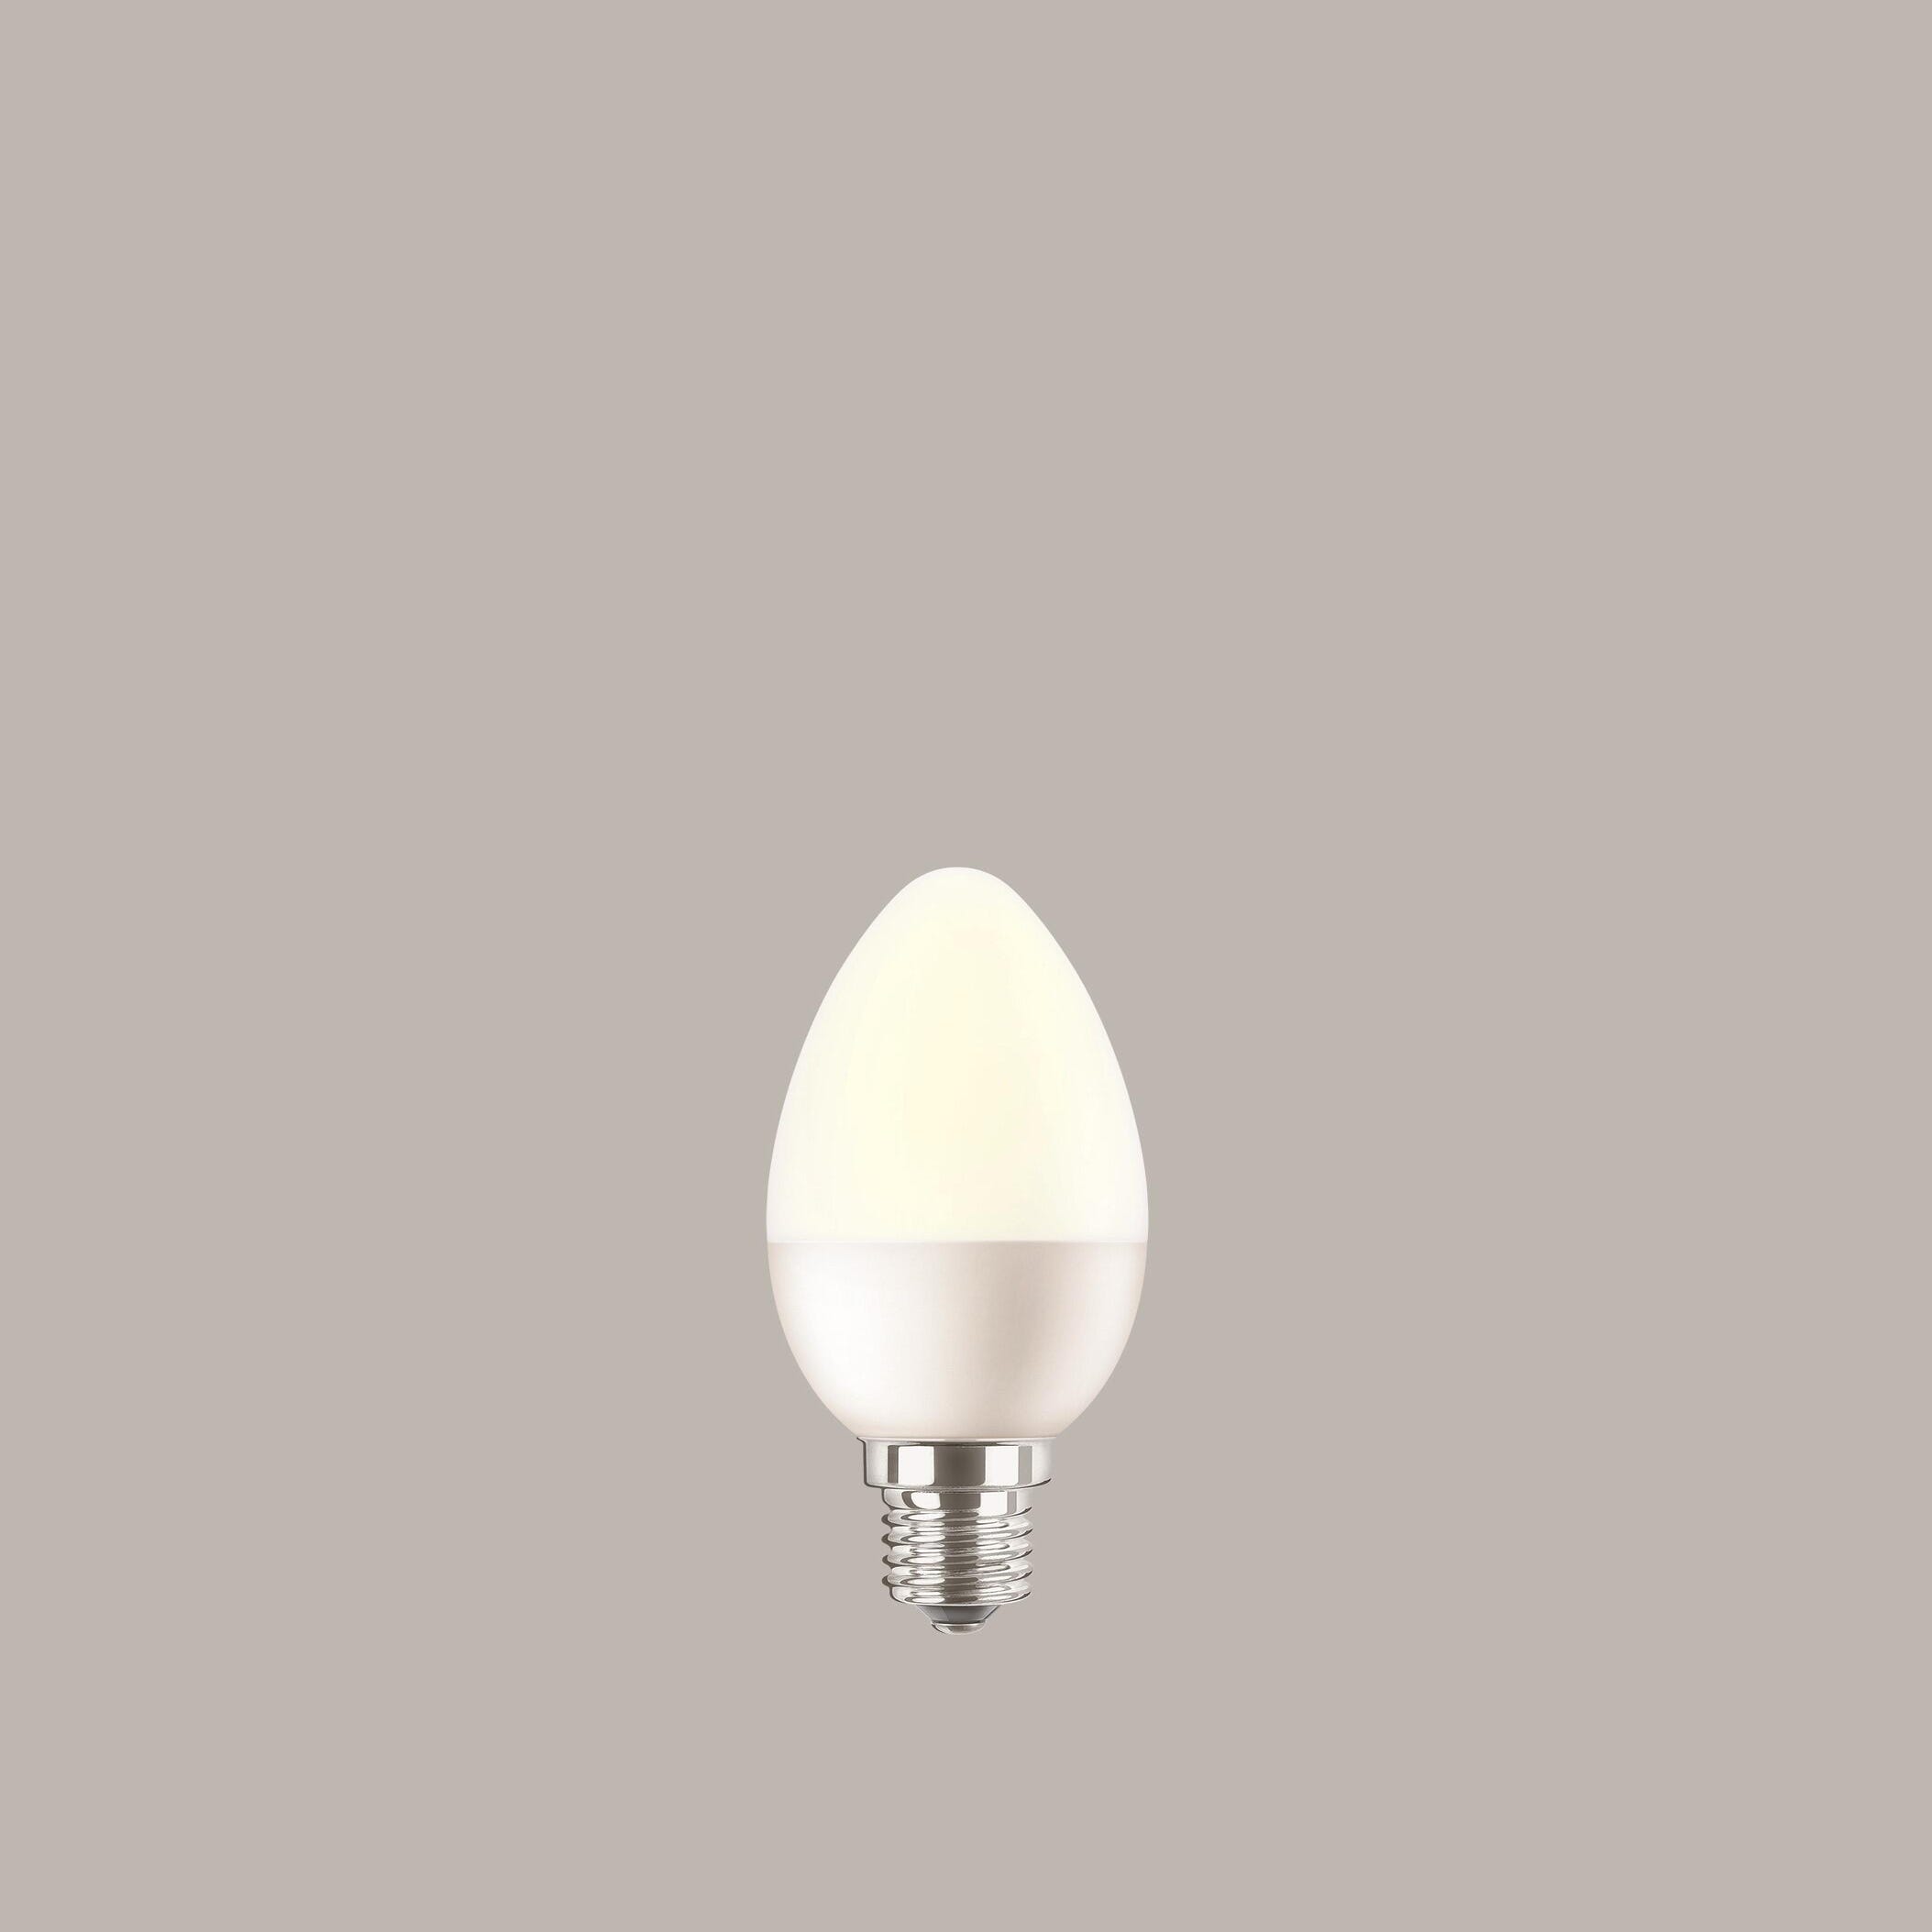 Ampoule incandescente pour four, E14, 200Lm = 20W, blanc chaud